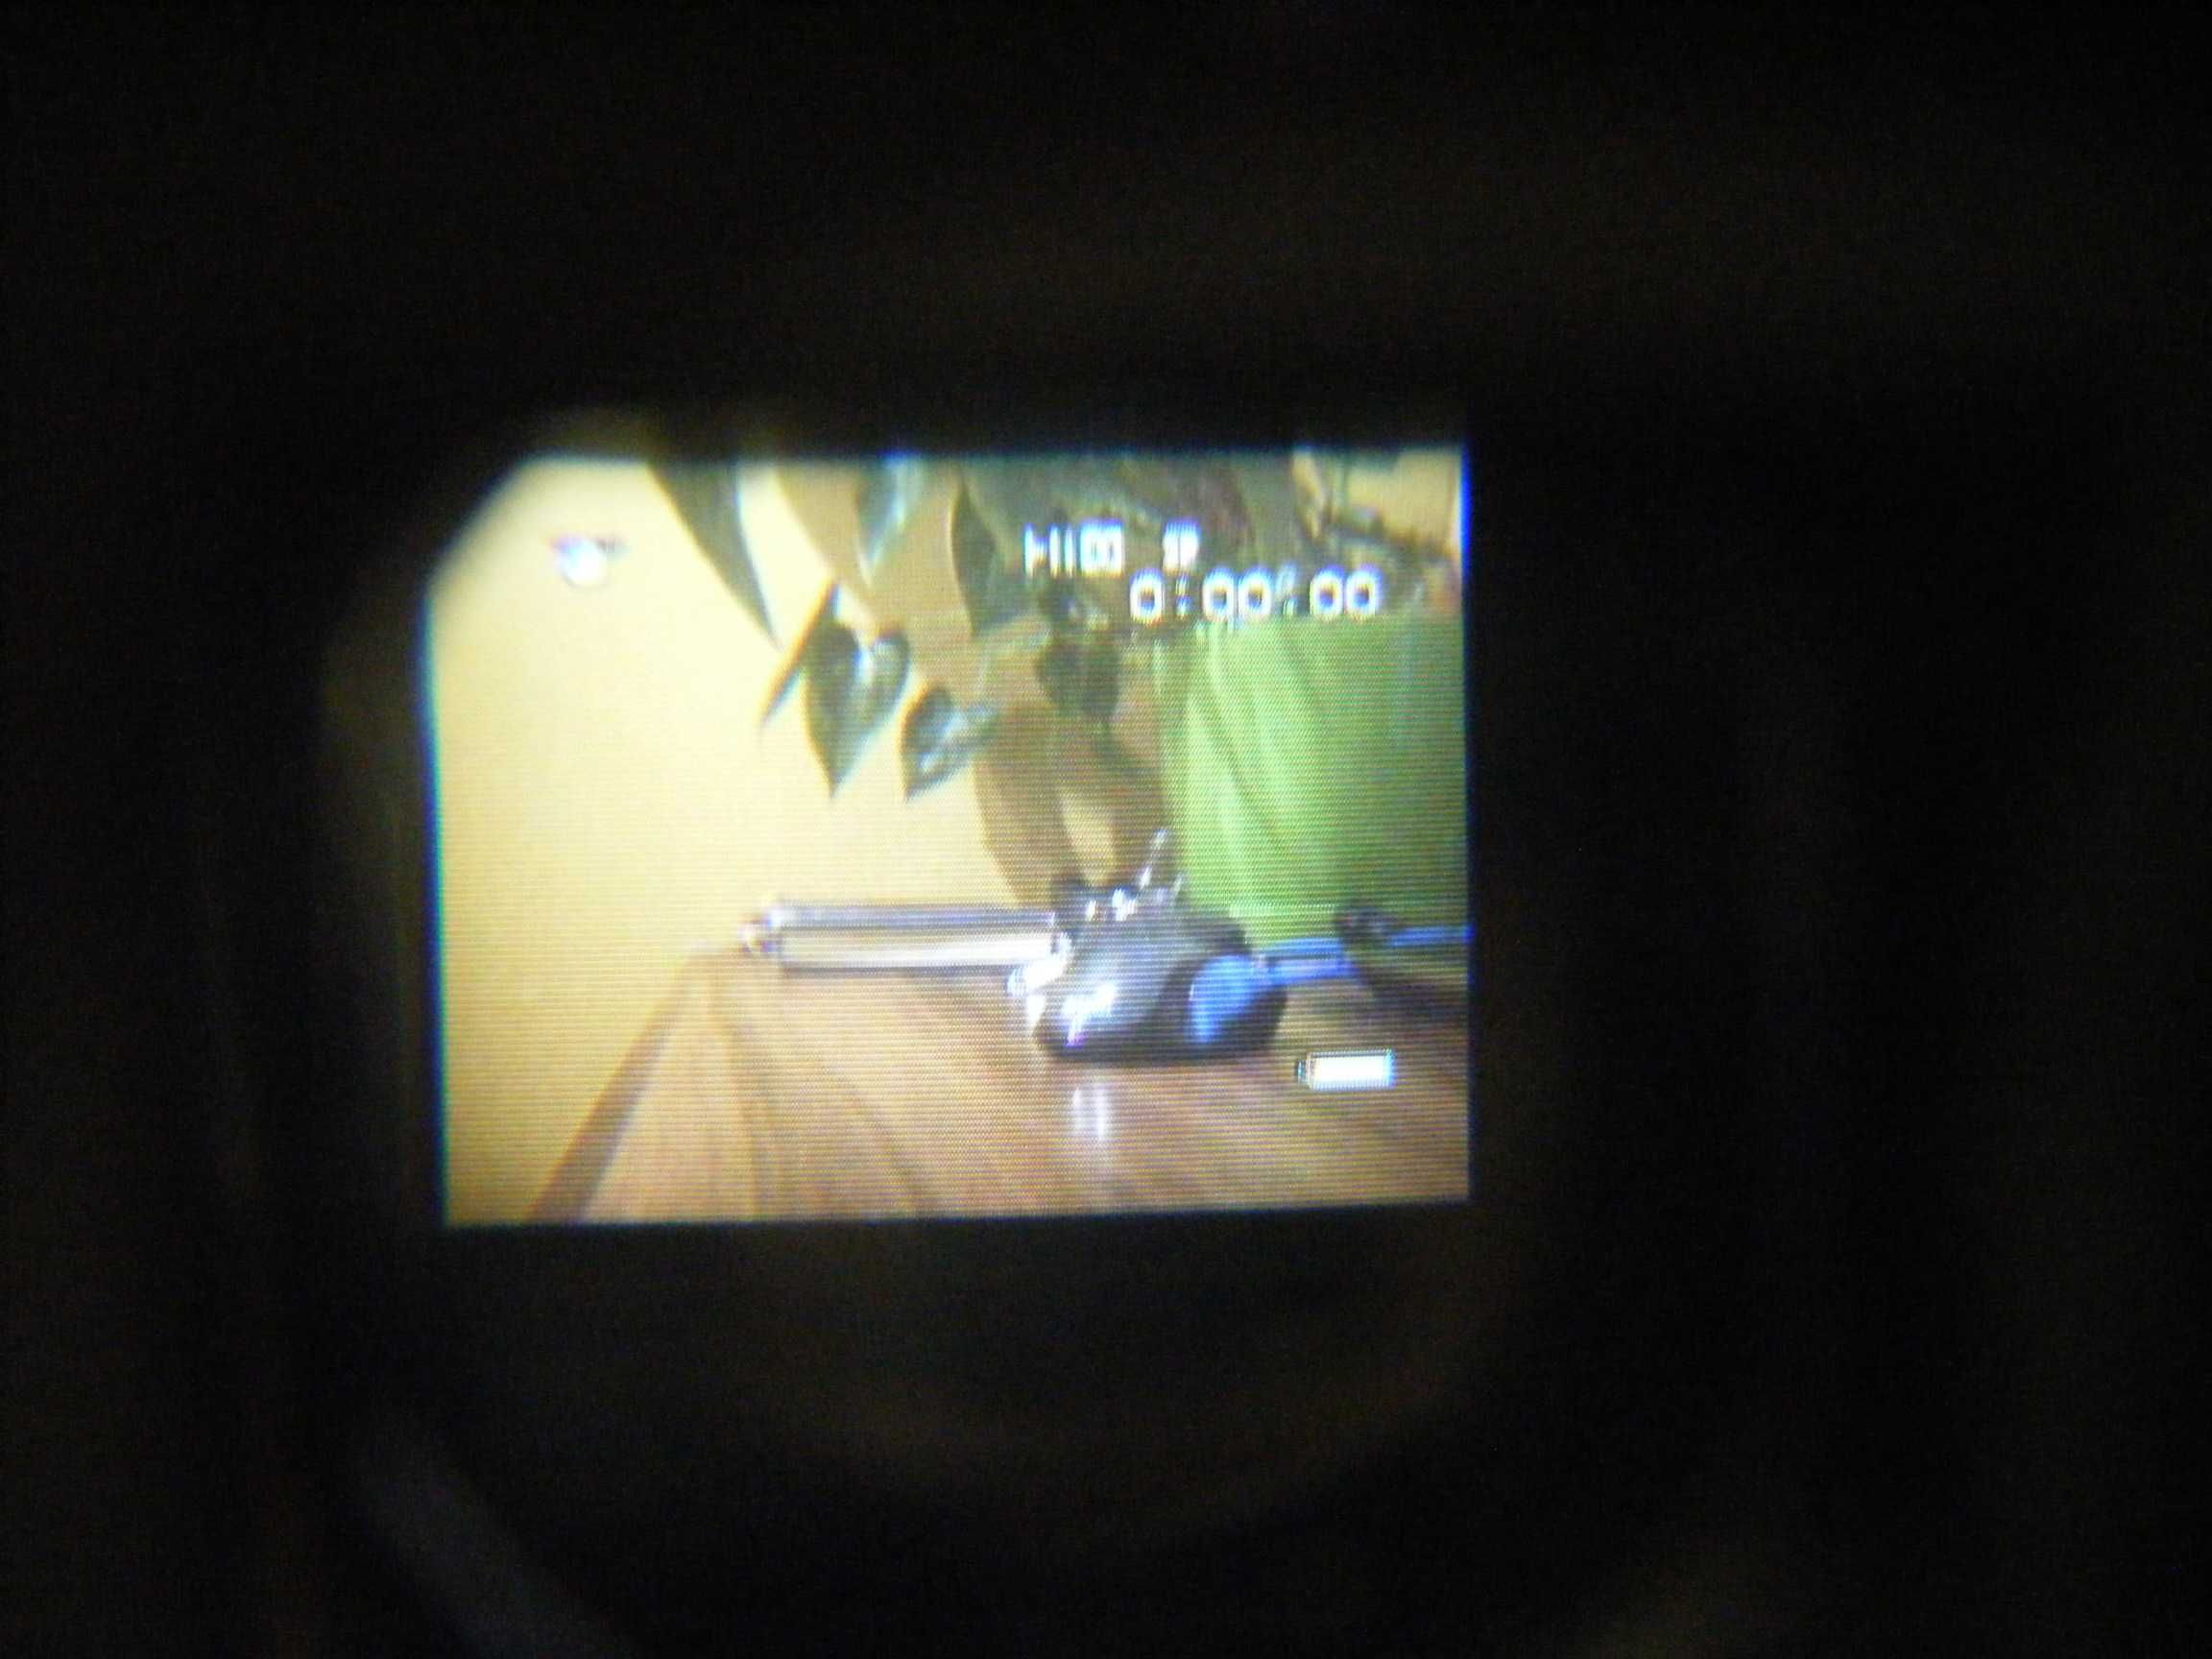 SONY CCD tr2300e video camera recorder